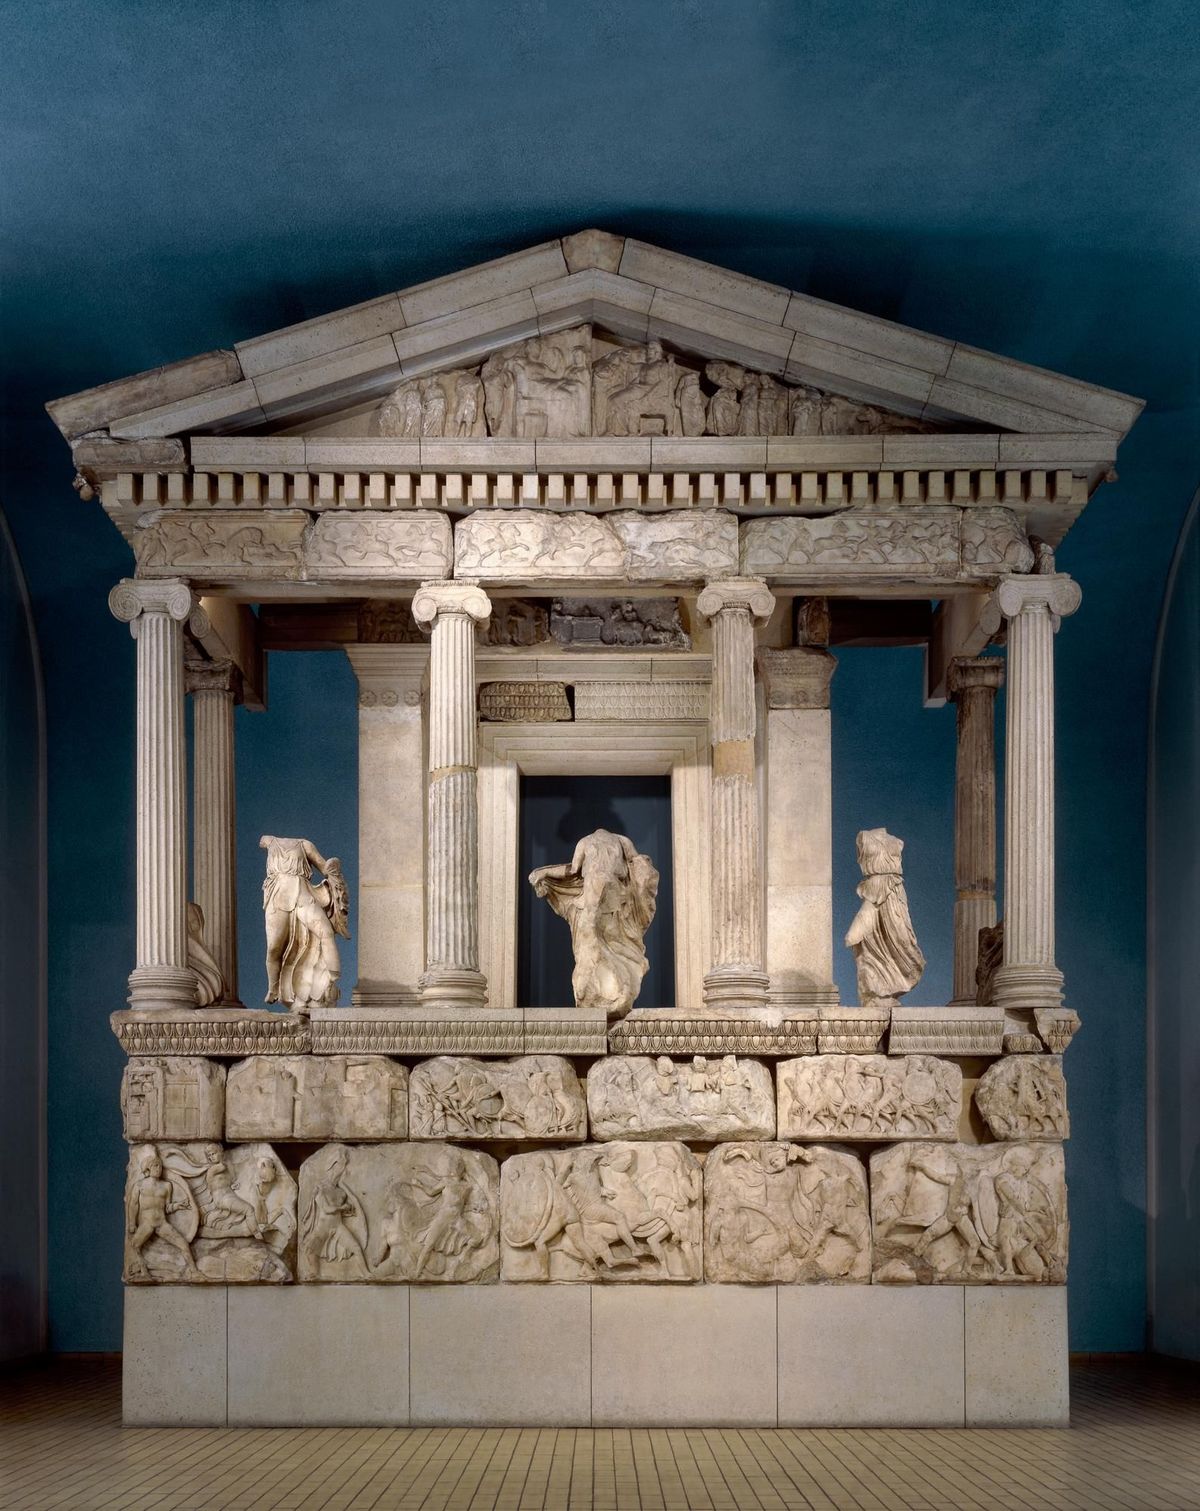 Nereidler Anıtı British Museum’un koleksiyonunda yer alıyor. Pek çok Anadolu eseri, Avrupa ve ABD’deki müzelerdeler.

NEREİDLER ANITI: © BRITISH MUSEUM